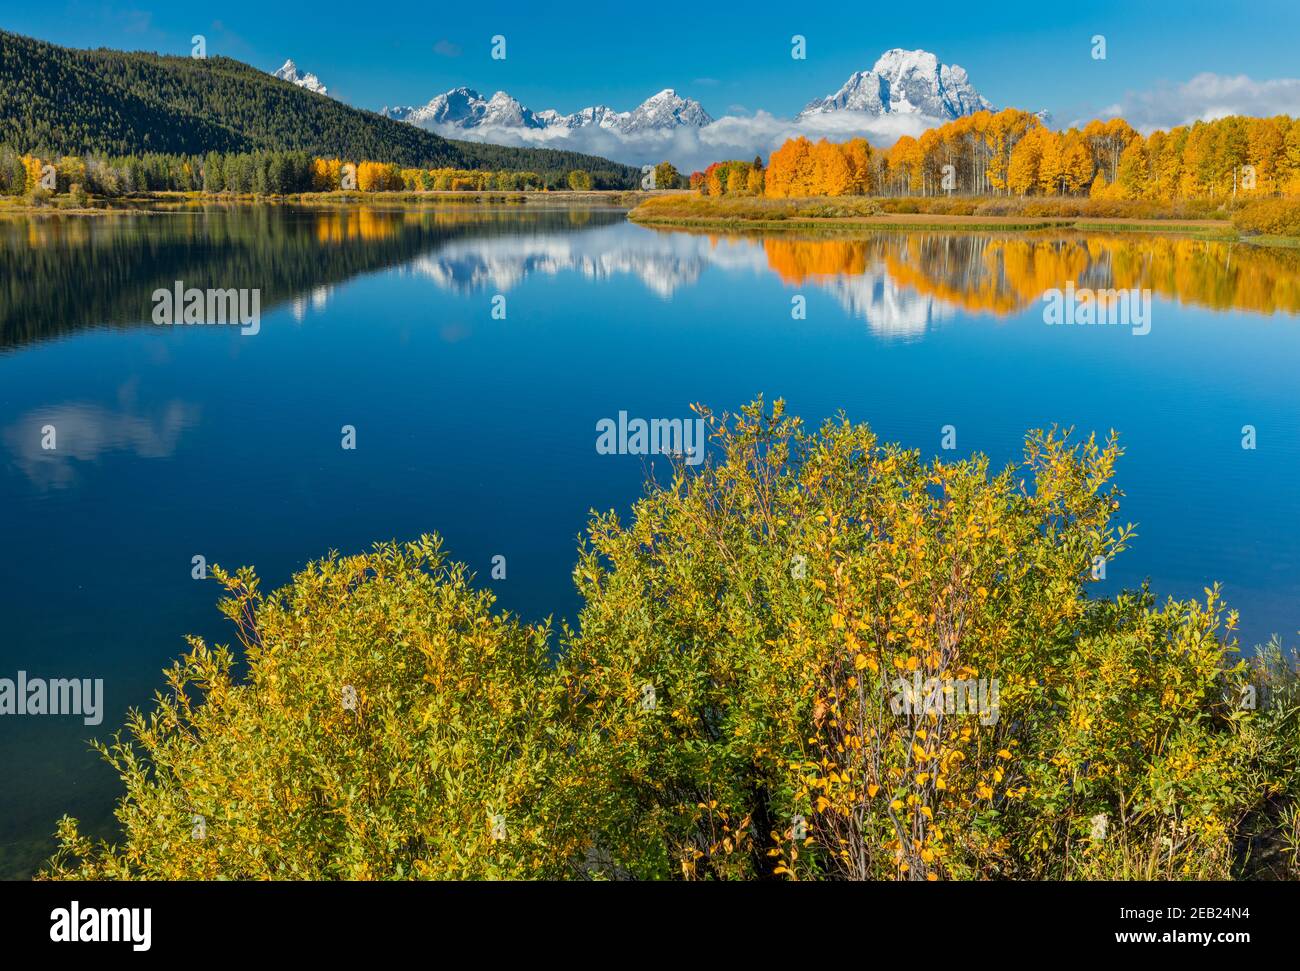 Grand Teton National Park, WY: Weiden am Ufer des Snake River am Oxbow Bend mit Mount Moran in tiefen Wolken gehüllt, die sich mit Herbstkolo spiegeln Stockfoto